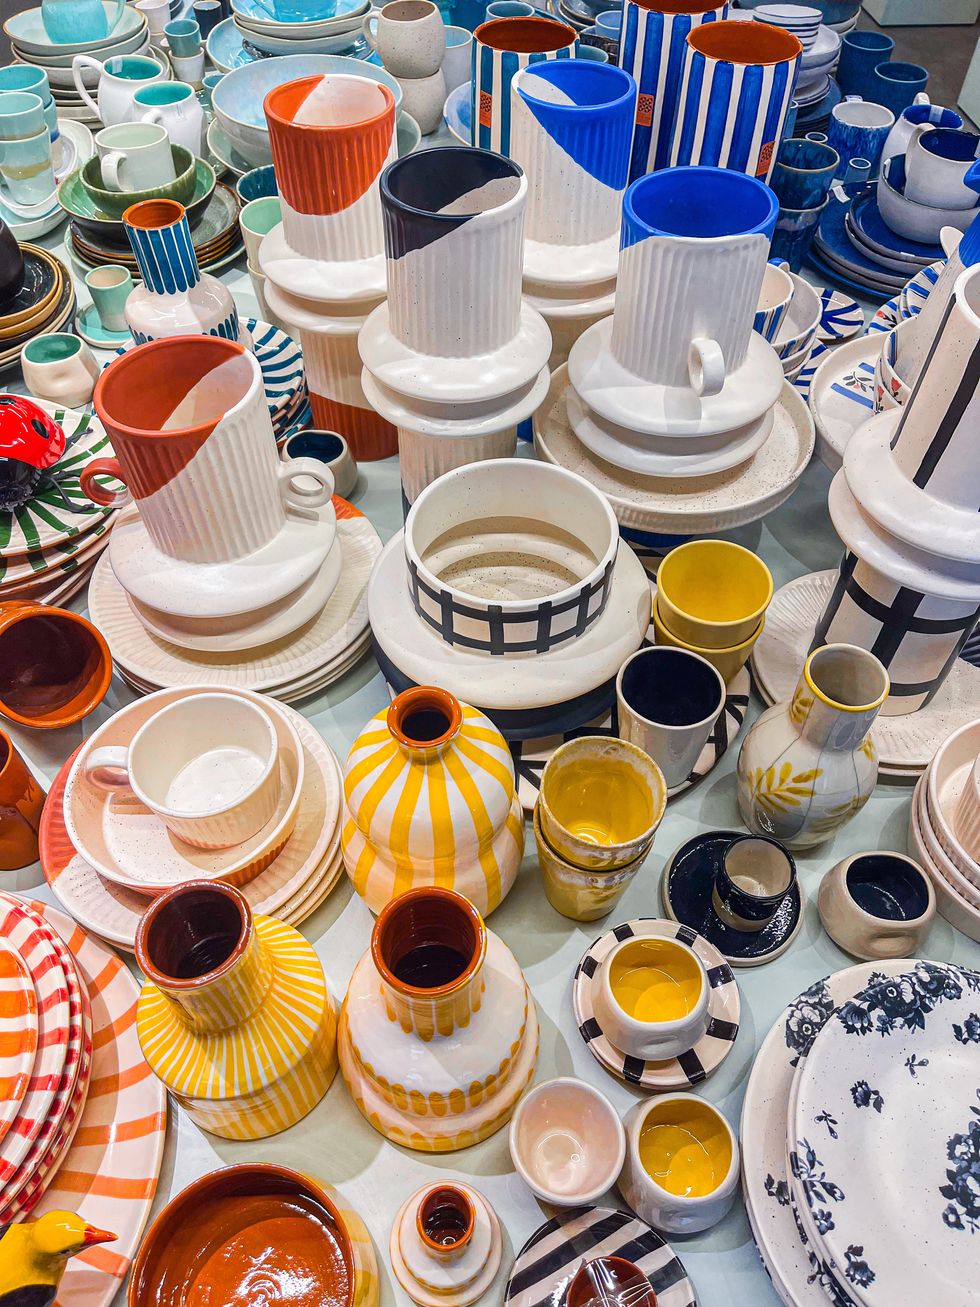 ceramics in different colors